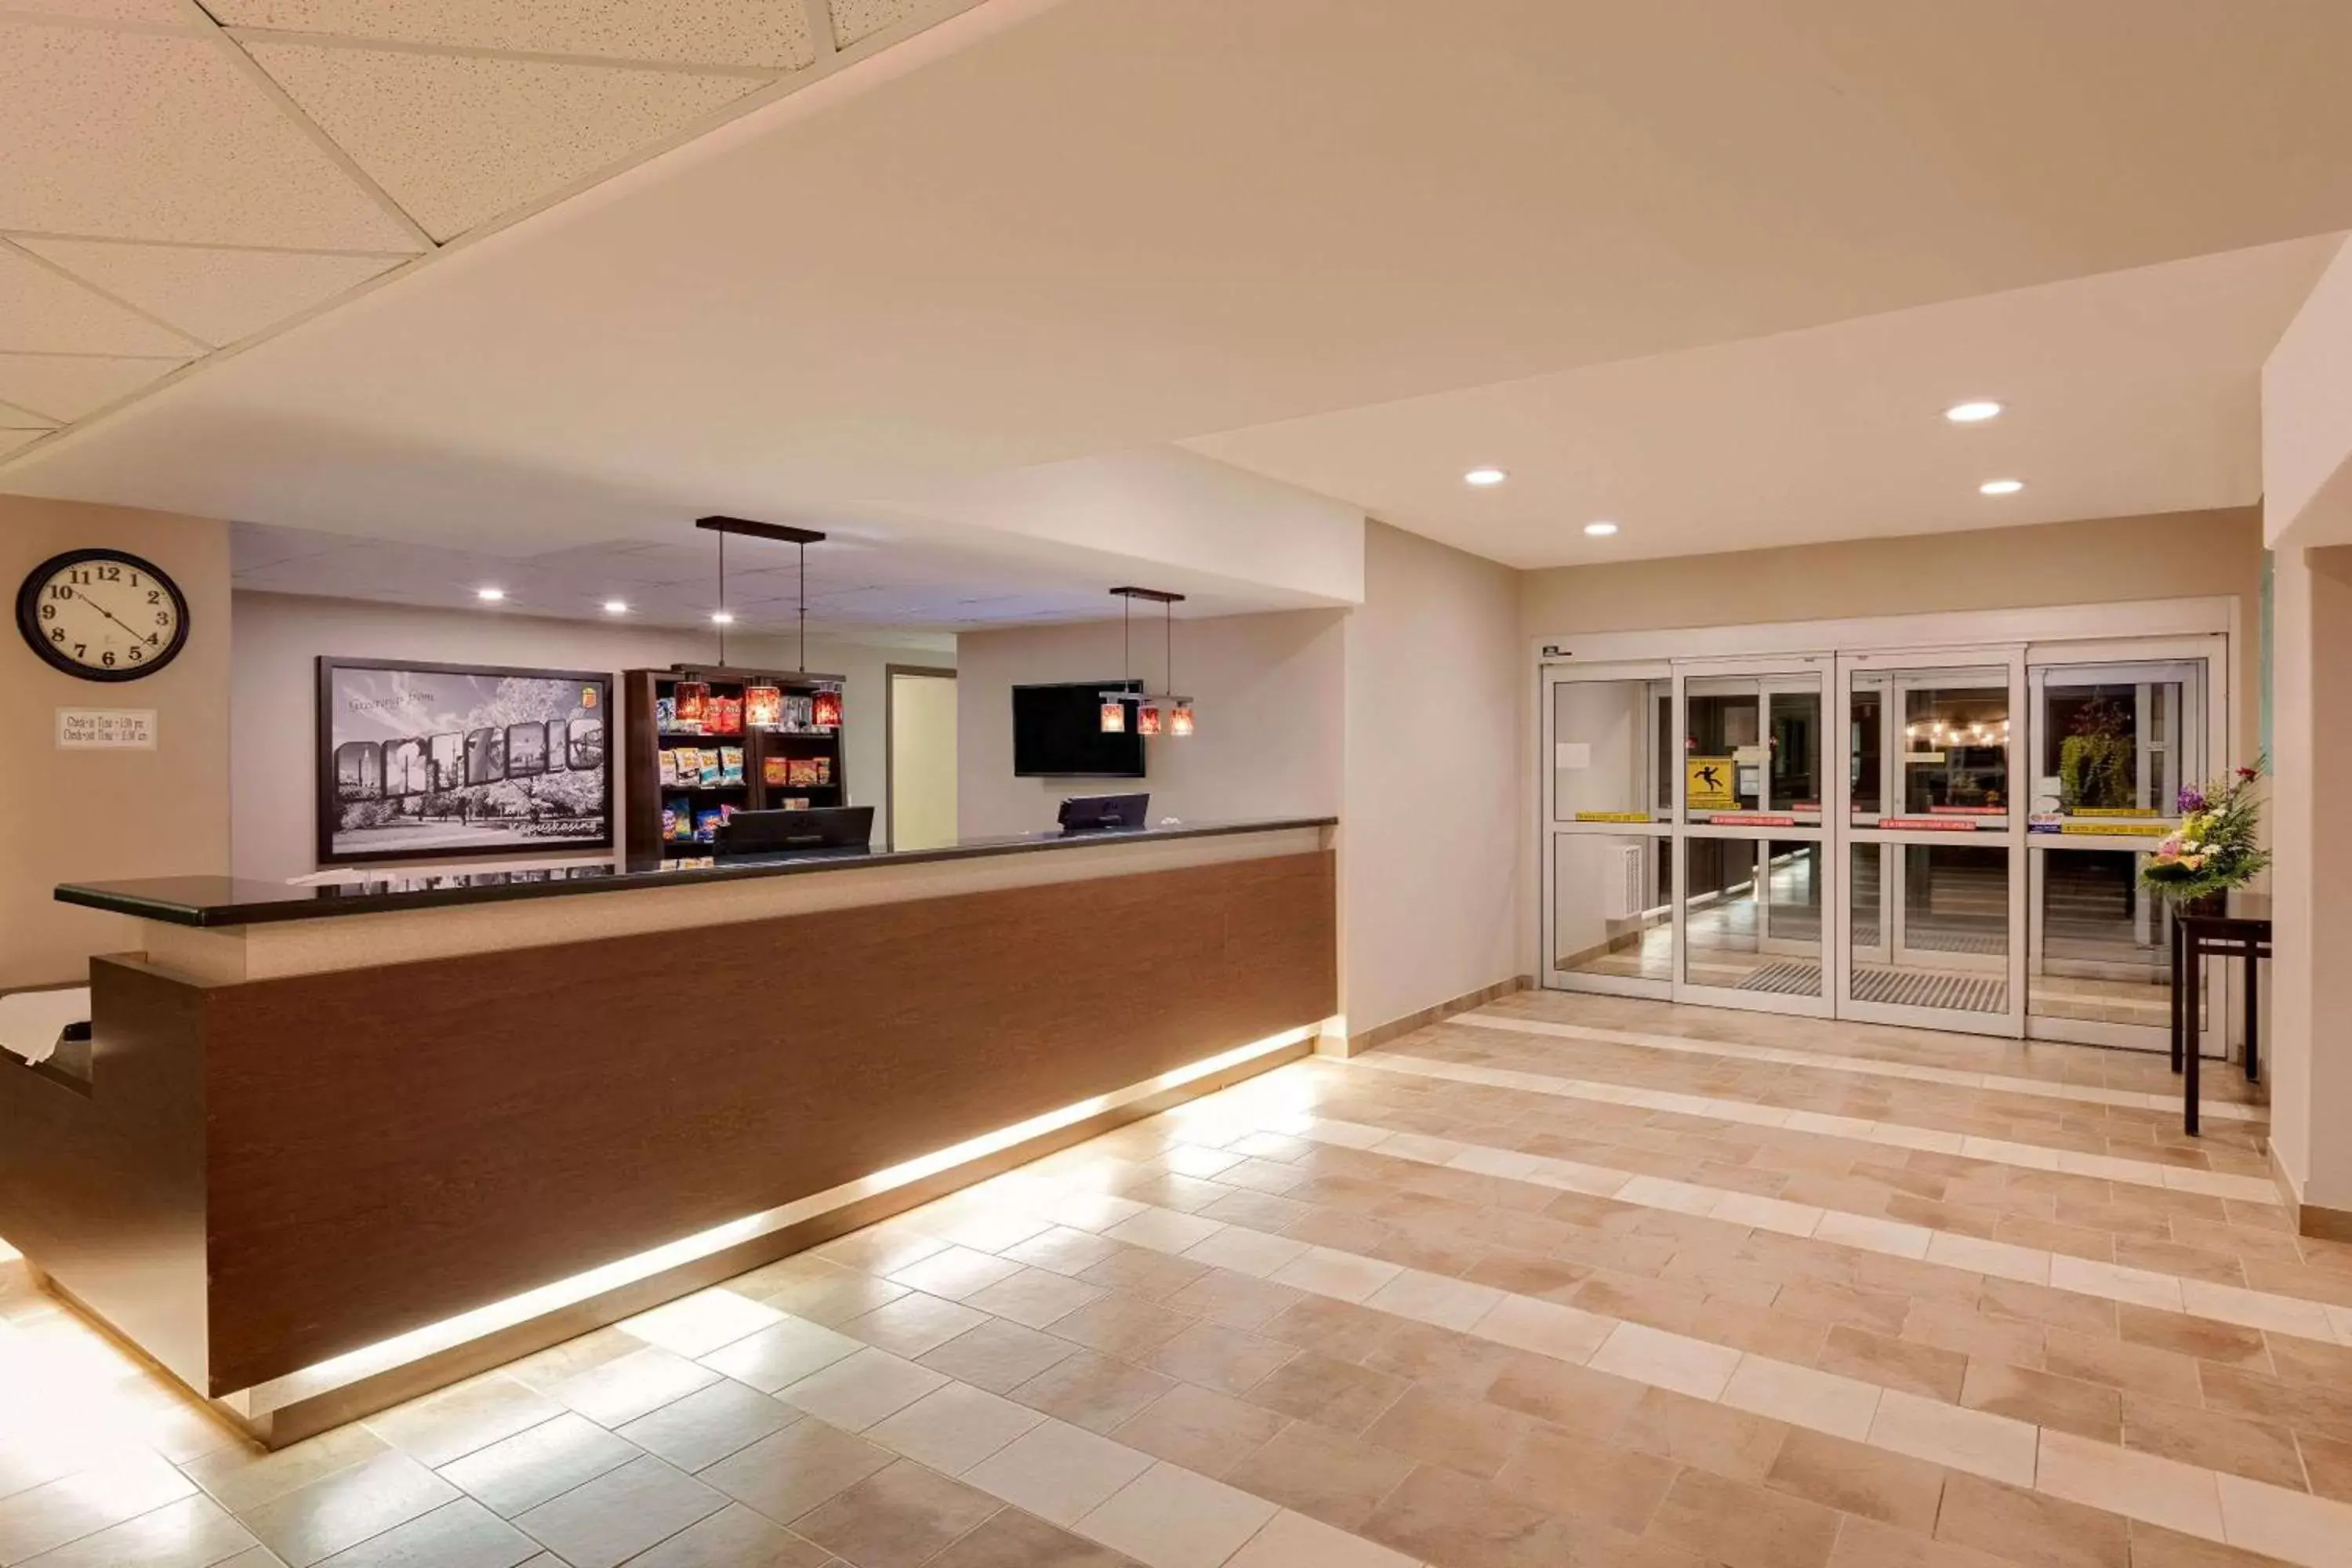 Lobby or reception, Lobby/Reception in Super 8 by Wyndham Kapuskasing